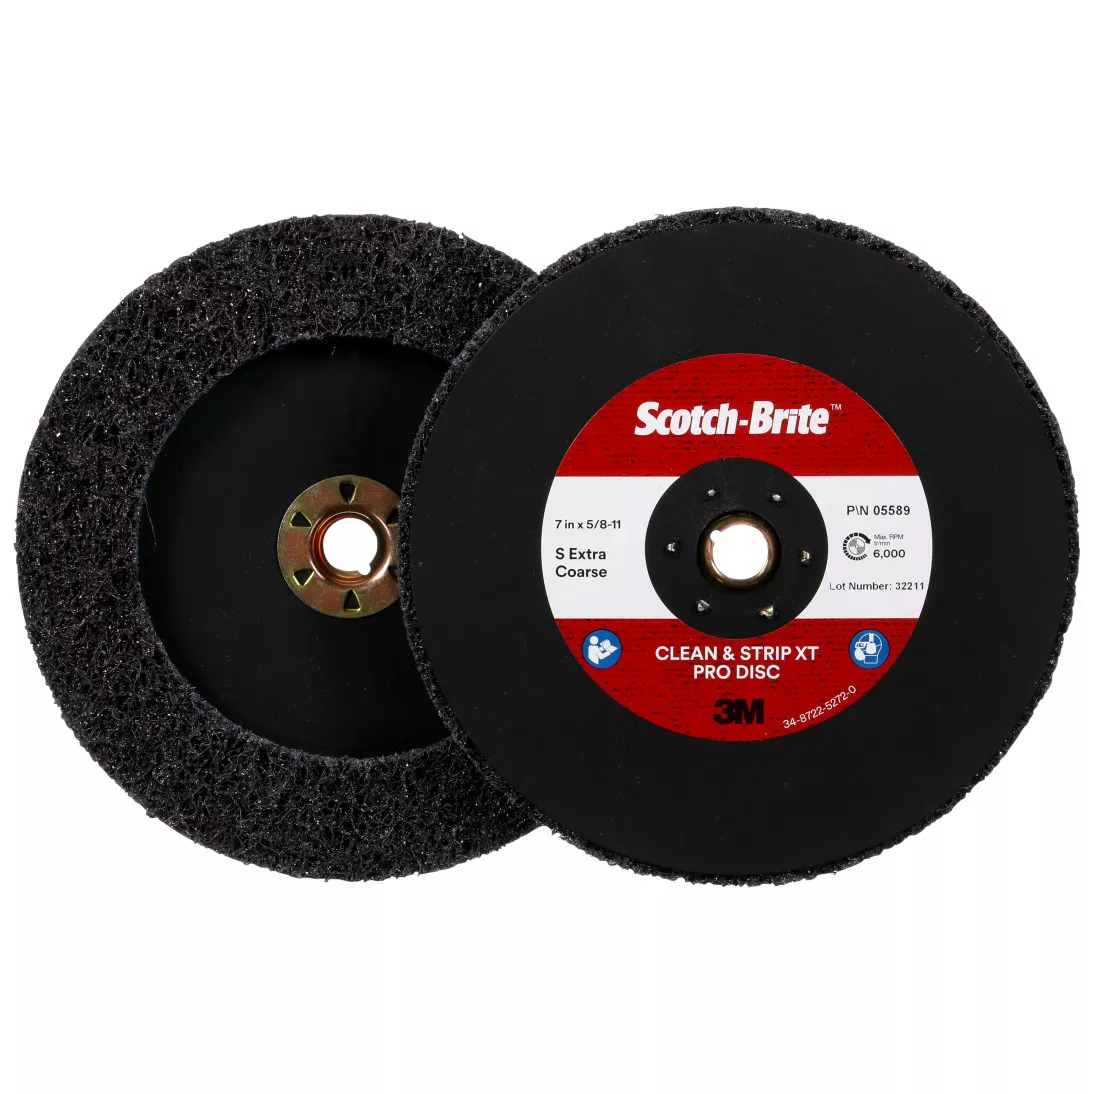 Scotch-Brite™ Clean and Strip XT Pro Disc, XO-DC, SiC Extra Coarse, TN,
Purple, 7 in x 5/8